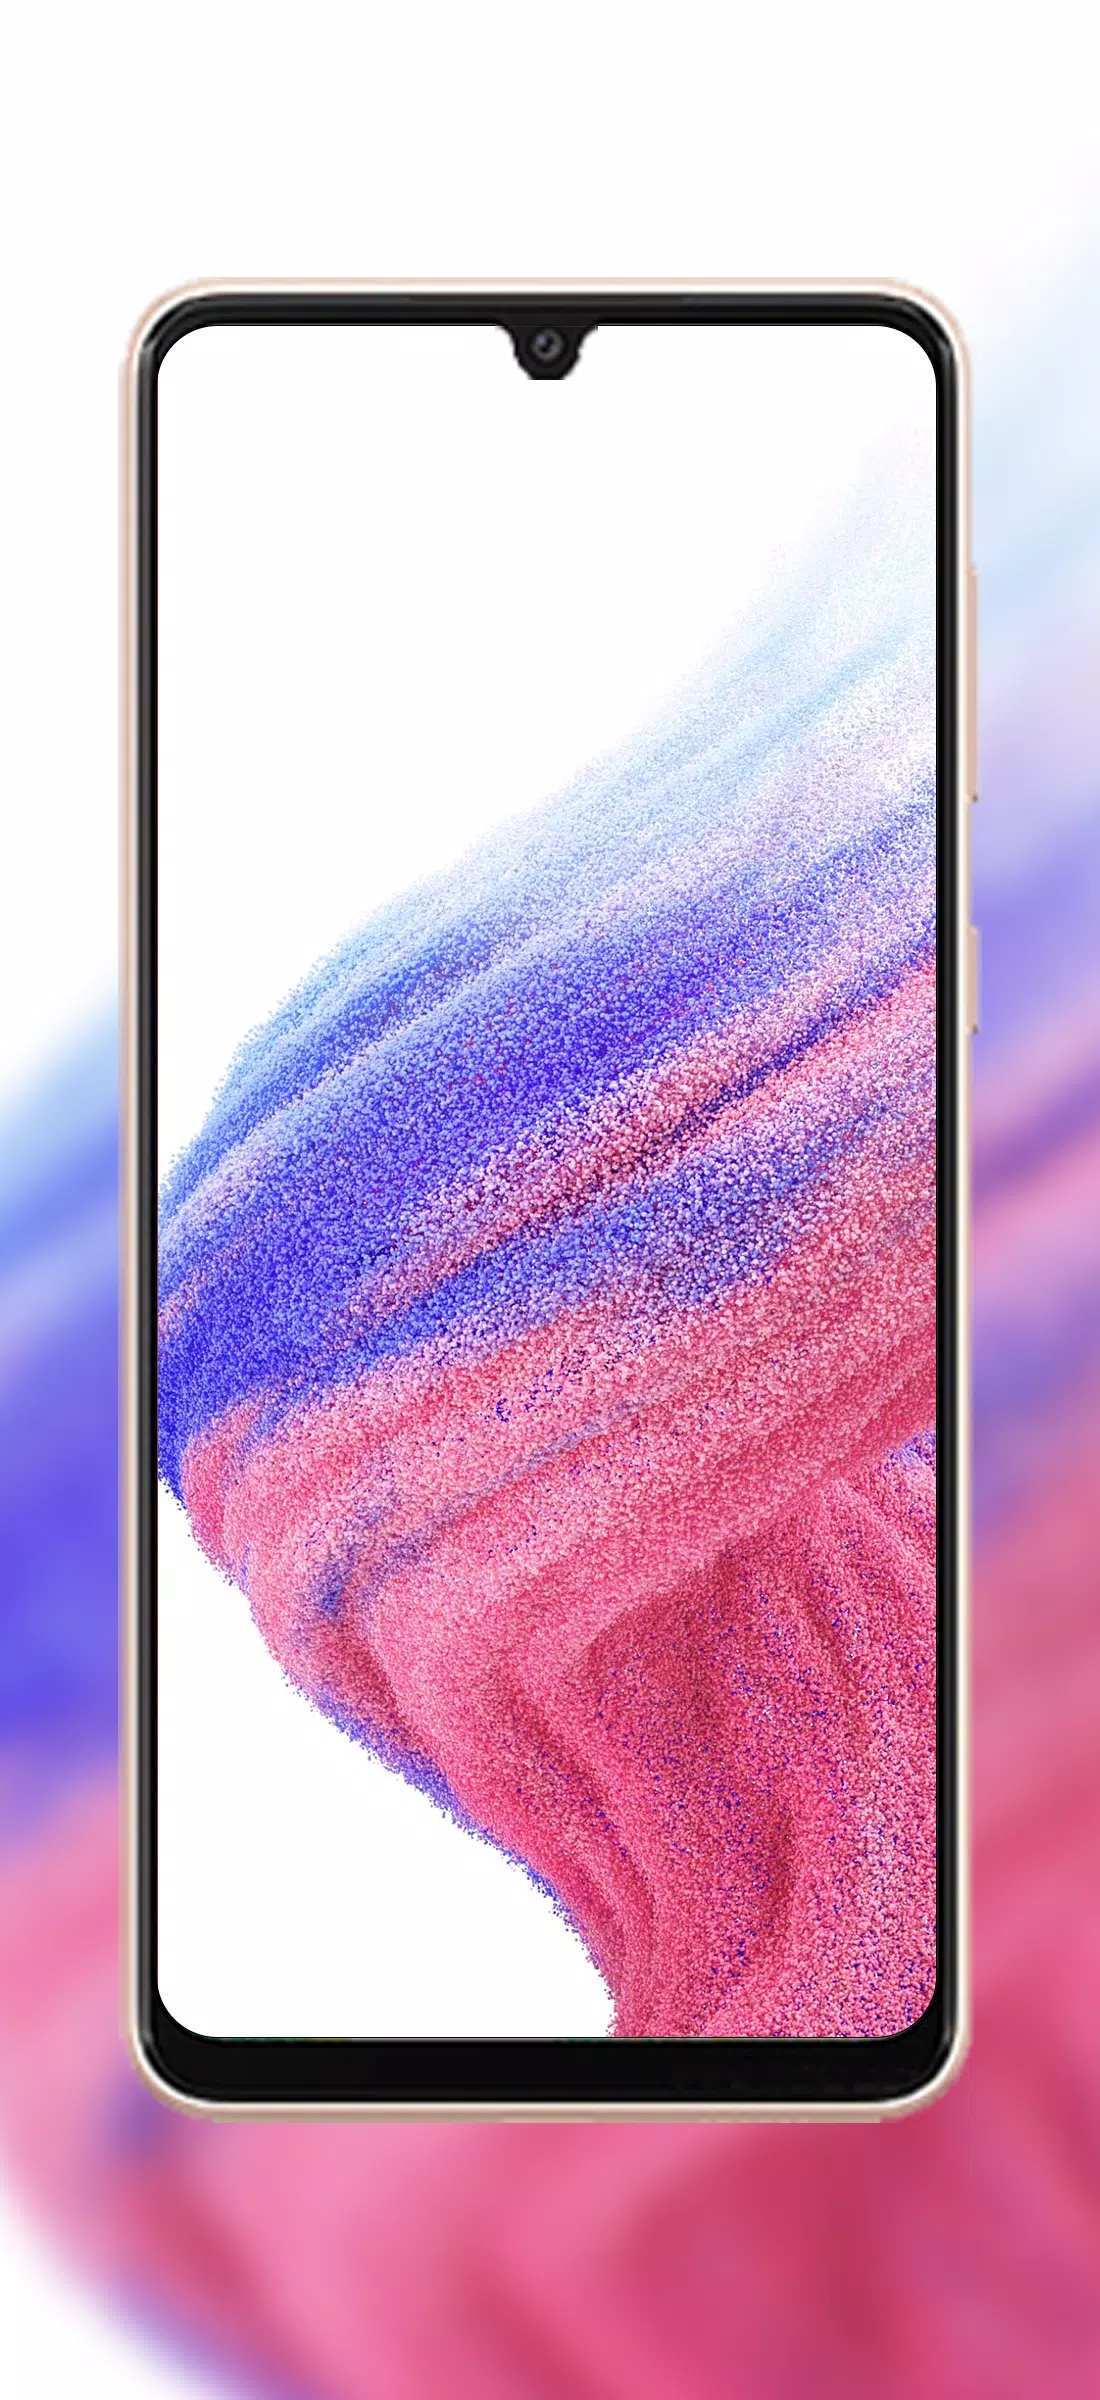 Lấy cảm hứng từ thiên nhiên đẹp mê hồn, hình nền Samsung A32 thể hiện được sự tinh tế và chất lượng của điện thoại này. Bạn sẽ nhận ra khả năng hiển thị màu sắc tuyệt vời của Samsung A32 qua các bức ảnh tuyệt đẹp này. Chọn cho mình một bức ảnh để trang trí màn hình điện thoại của bạn nhé!